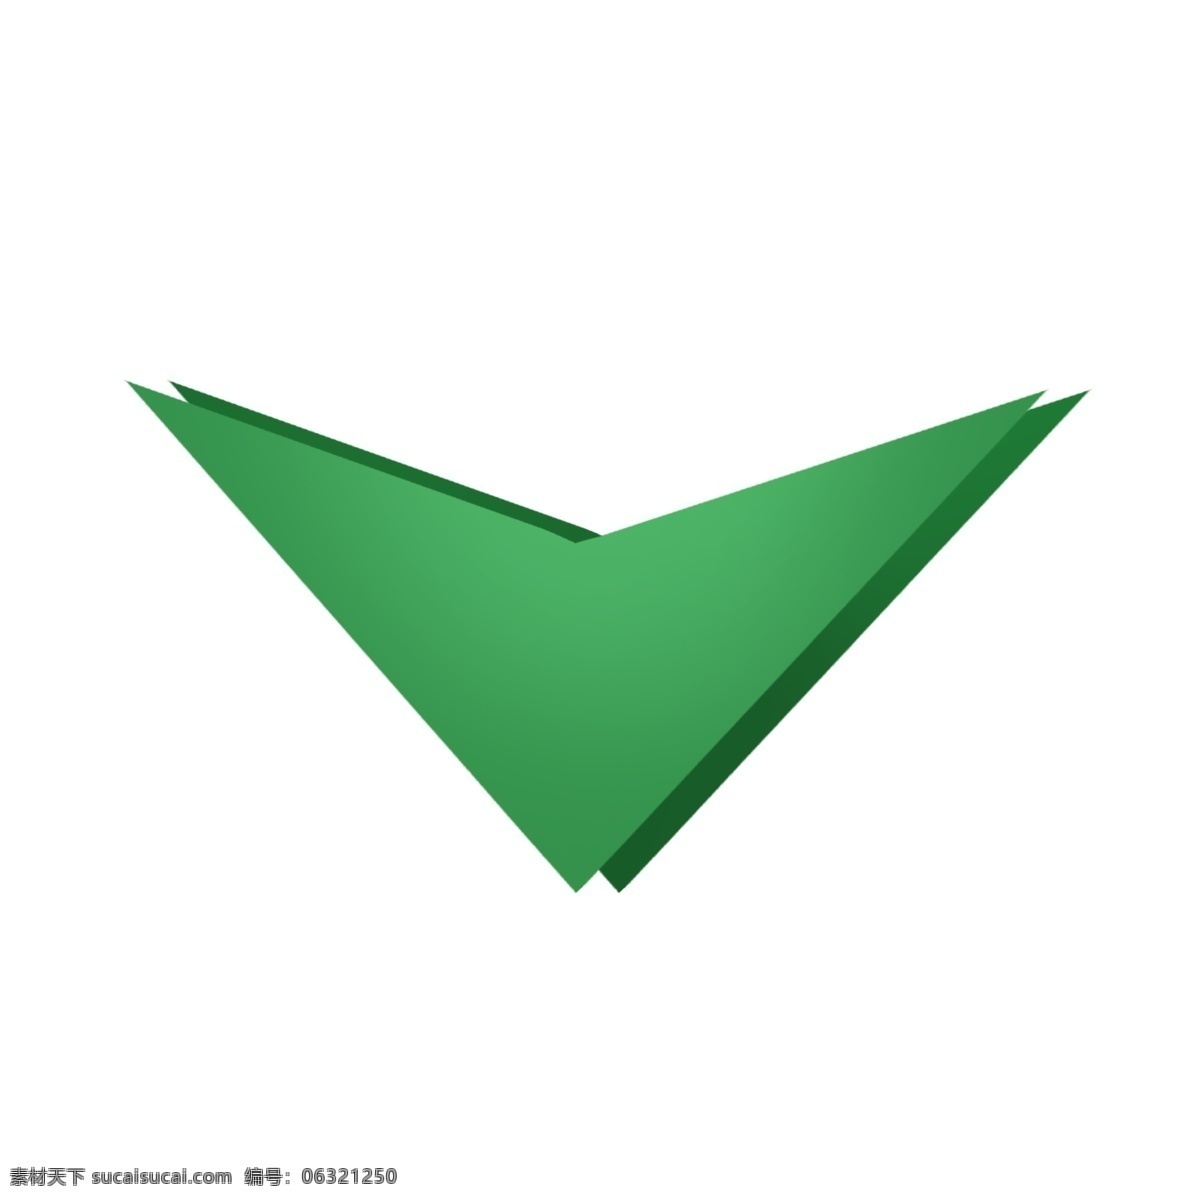 绿色 向下 方向 卡通 箭头 绿色箭头 墨绿色 墨绿色箭头 向下箭头 方向标志 标志 指路 指路标志